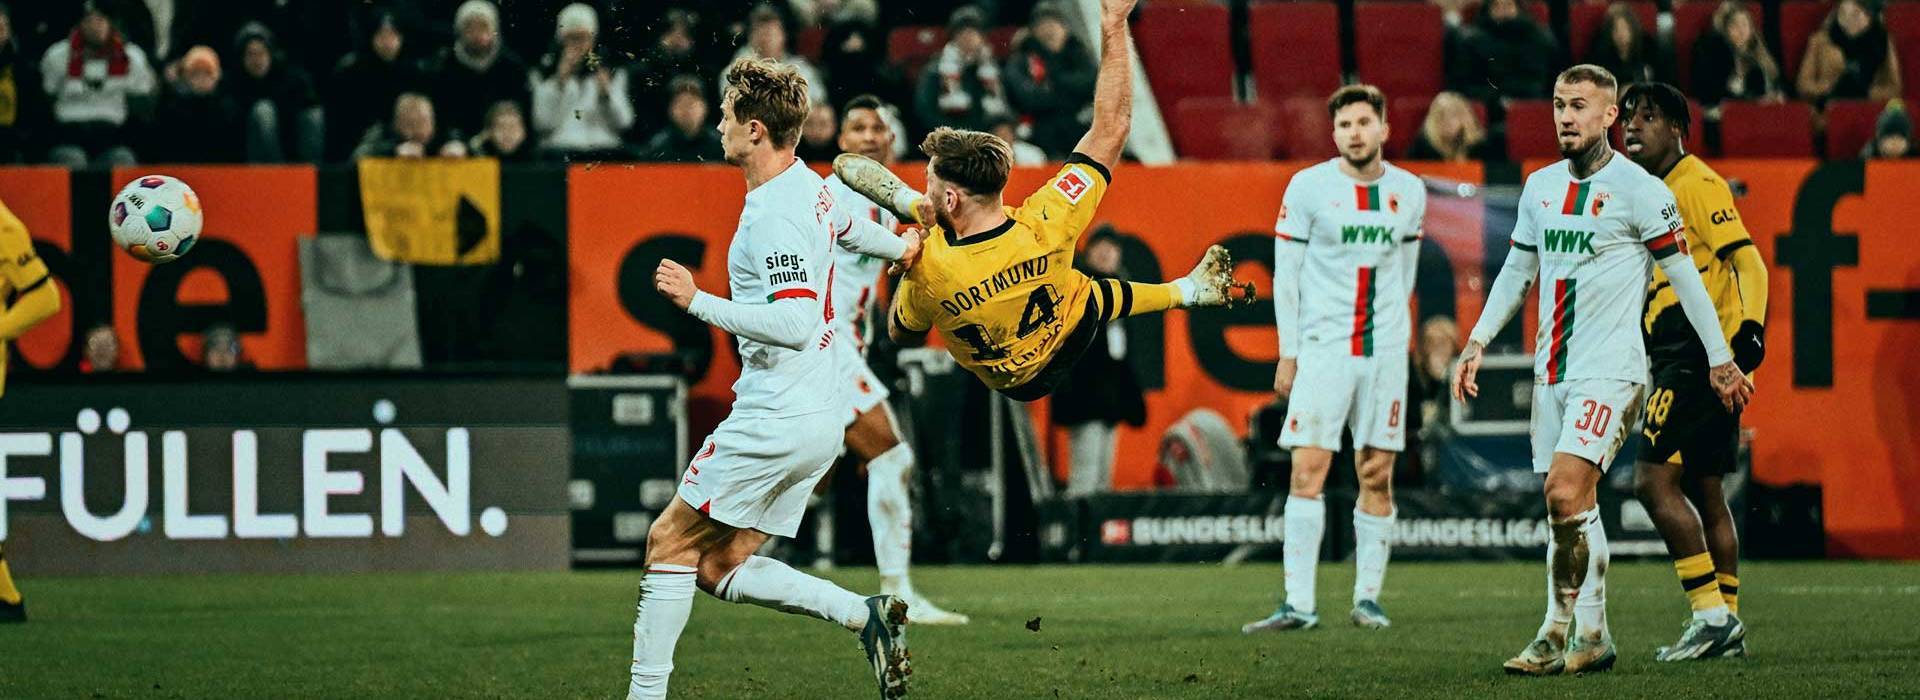 Viele Tore, unbequemer Gegner – die Fakten zum Spiel gegen Augsburg